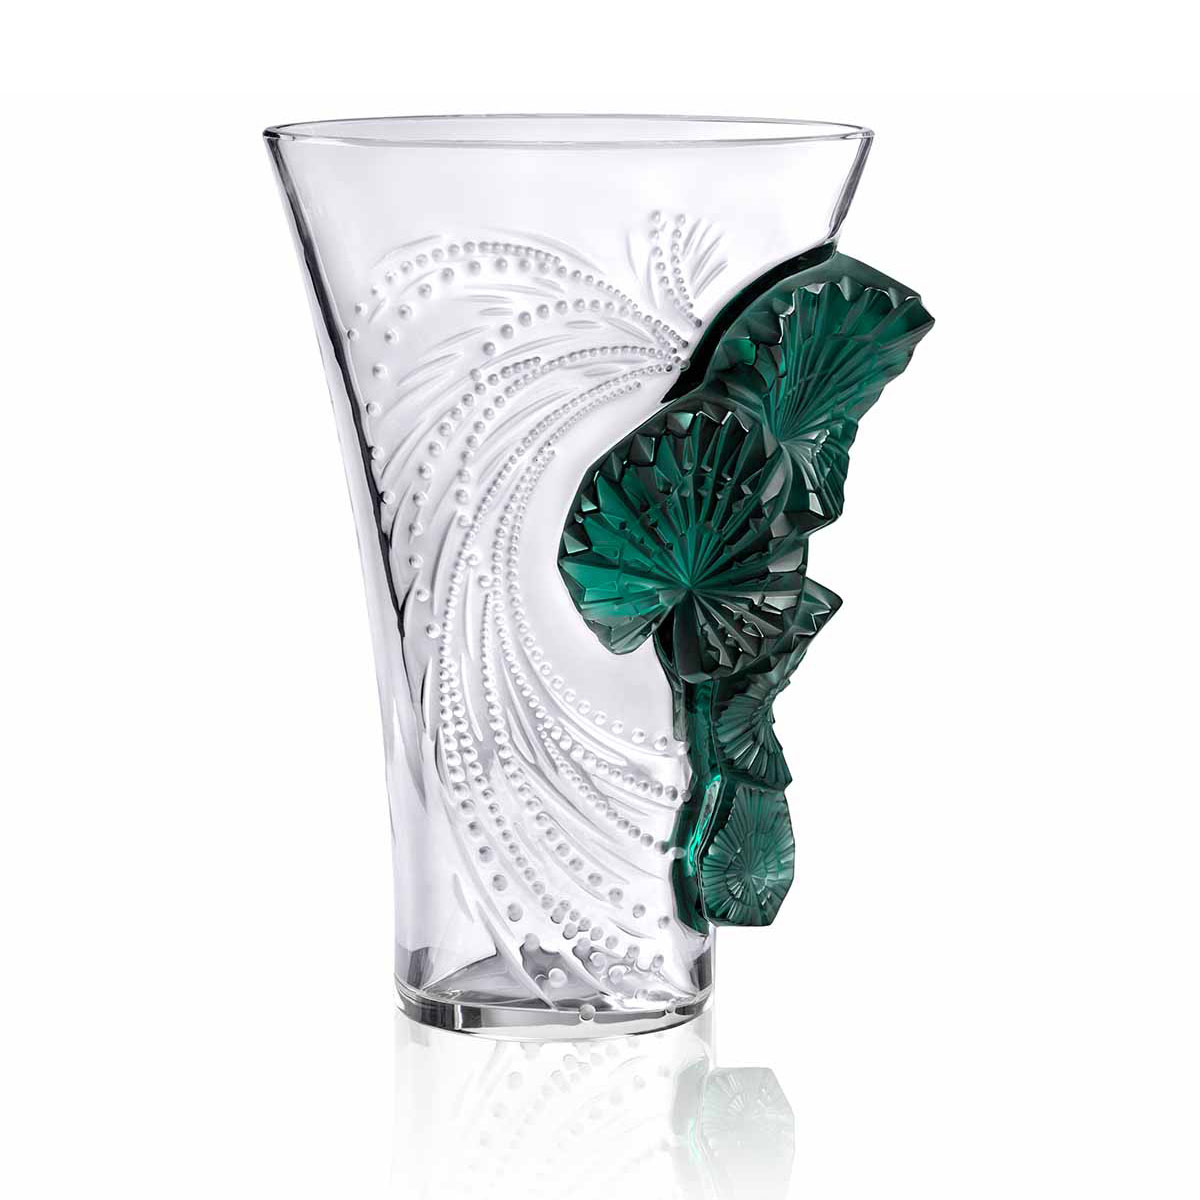 Lalique Palme 14.5" Vase, Limited Edition